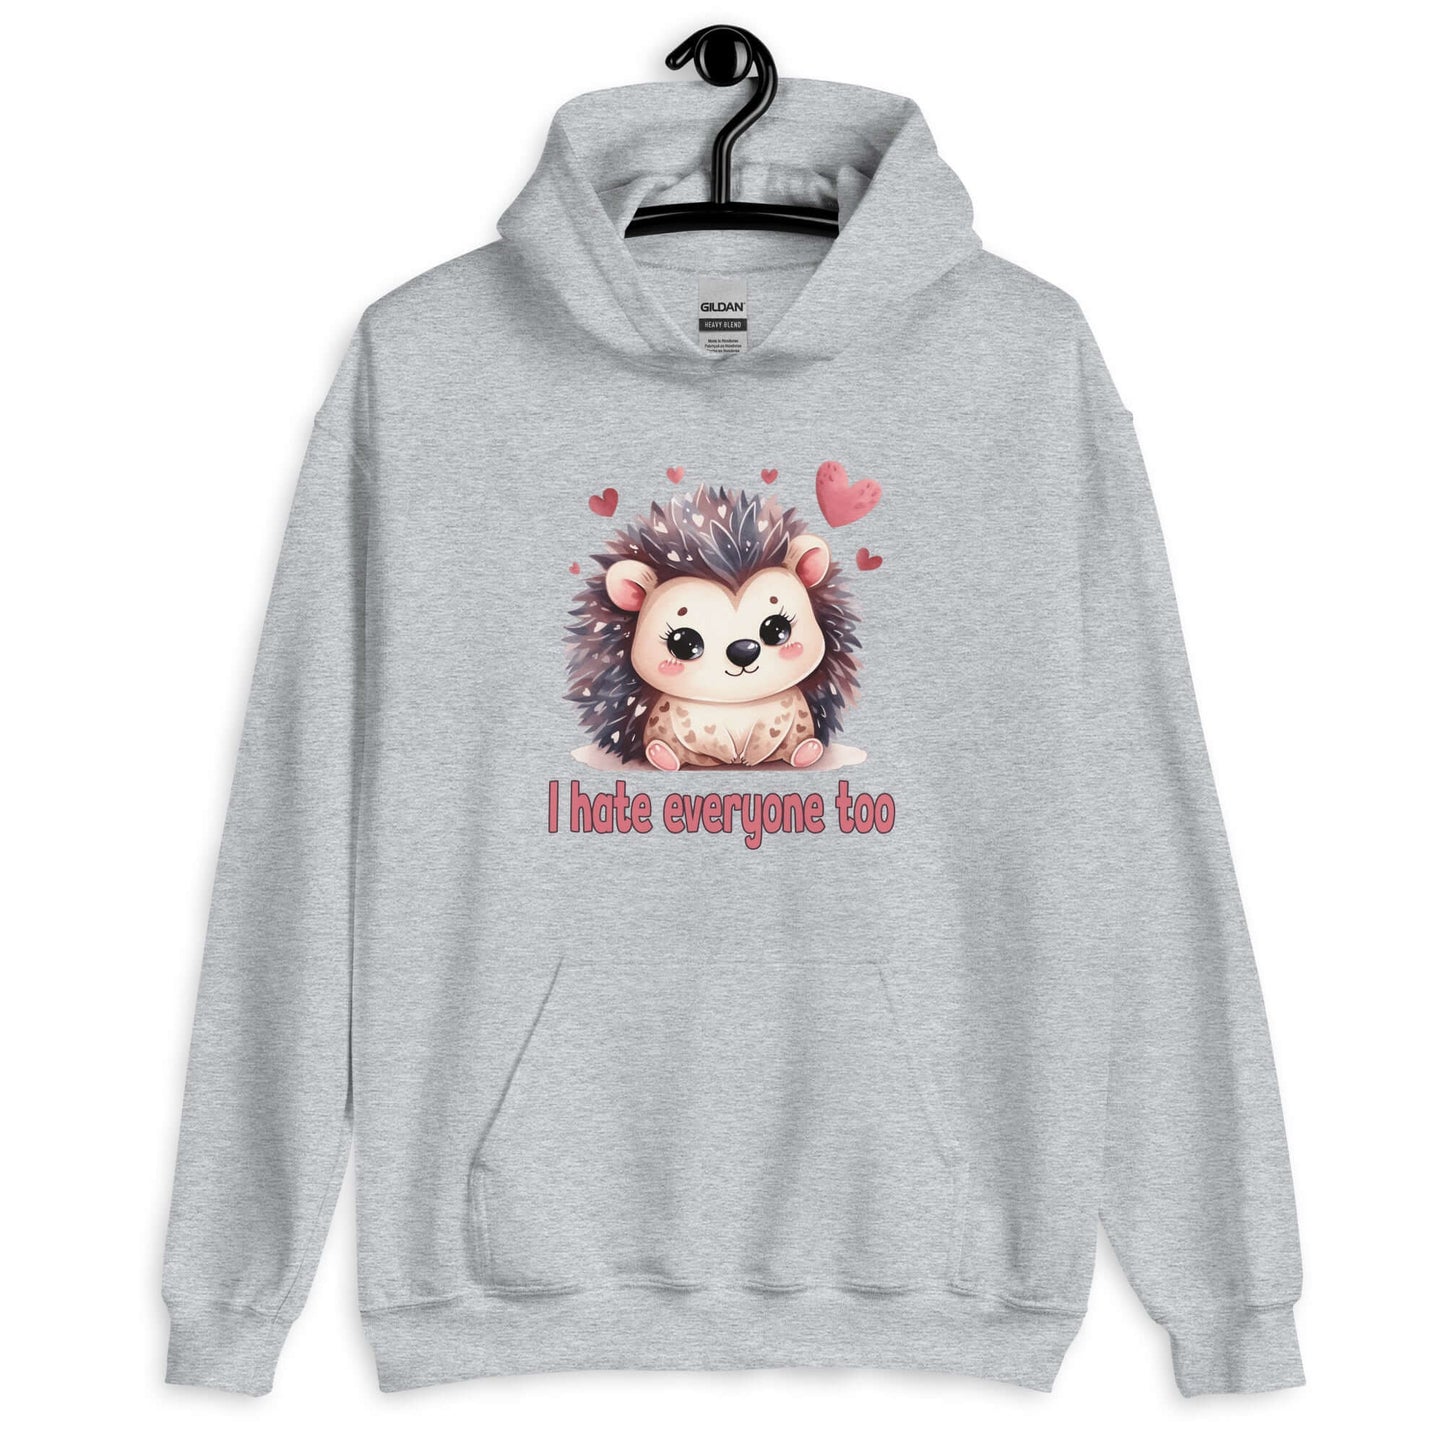 I hate everyone too hedgehog unisex hoodie sweatshirt